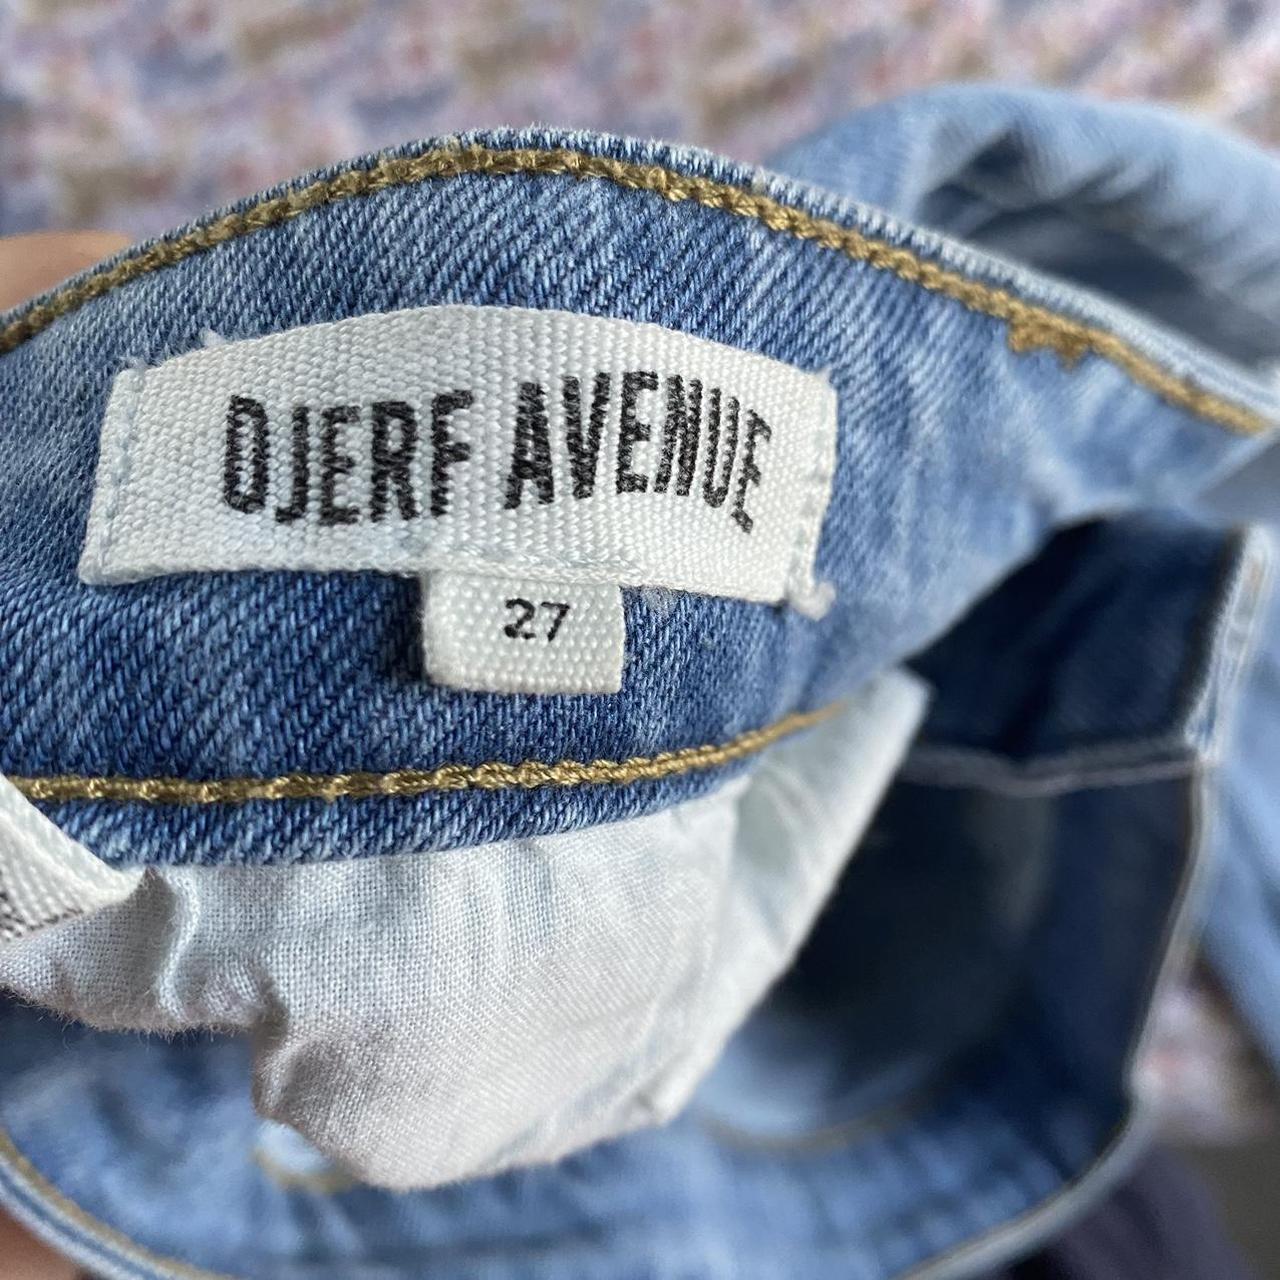 Djerf Avenue Women's Jeans (2)